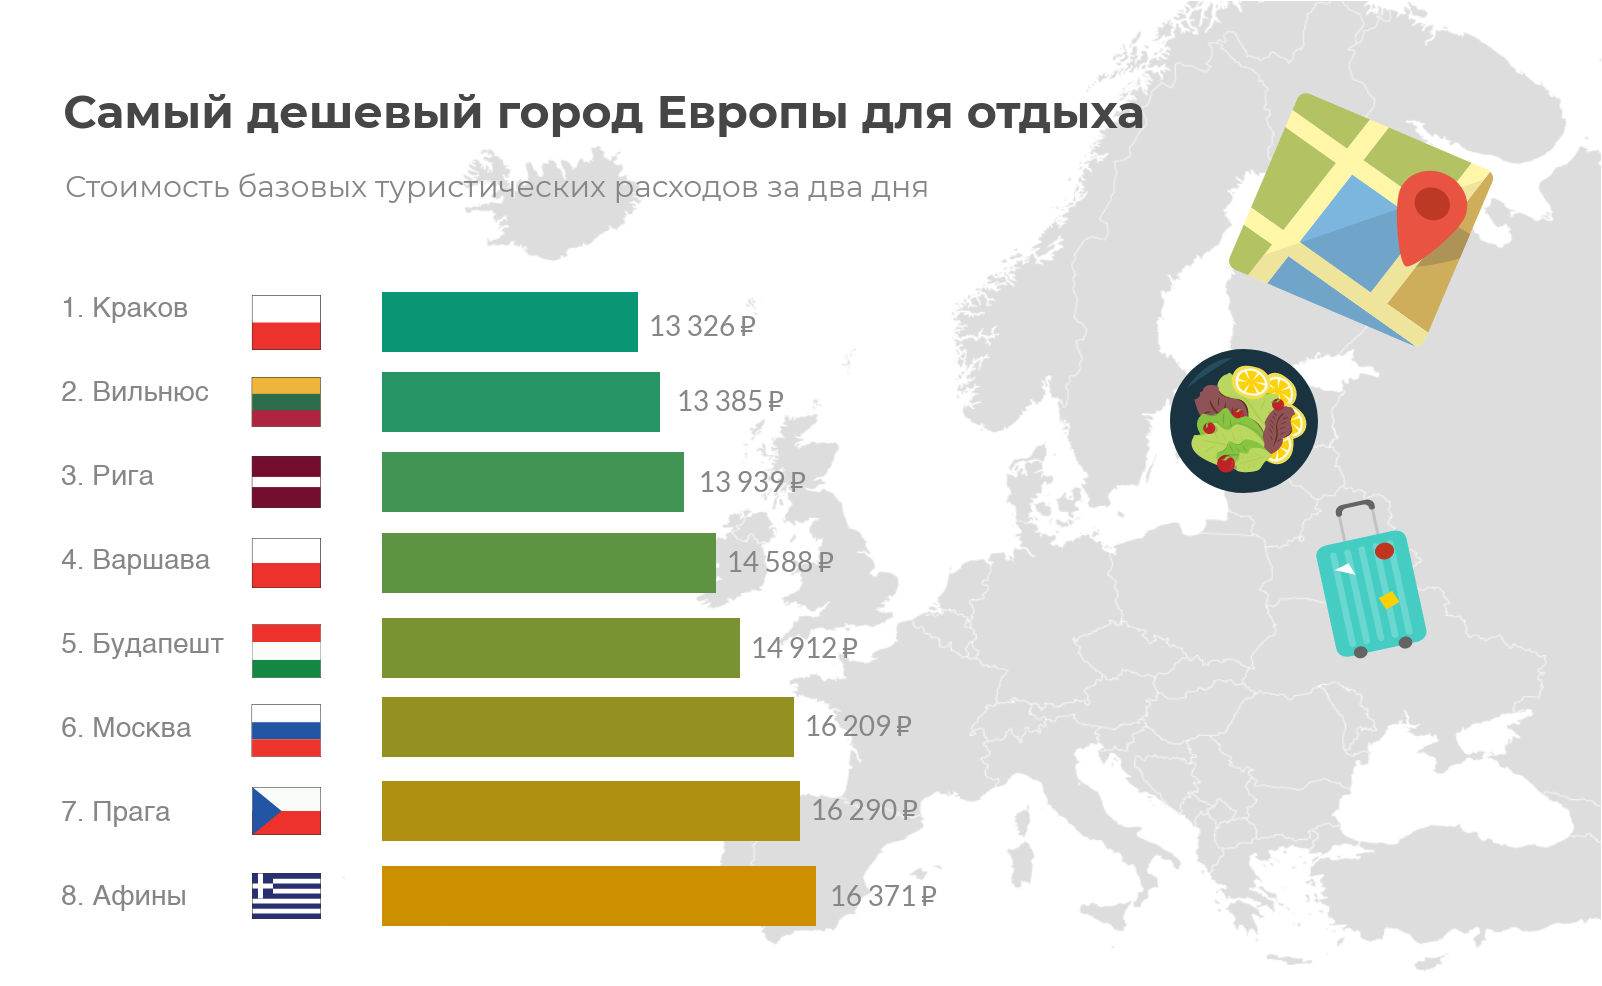 billigste byer europa